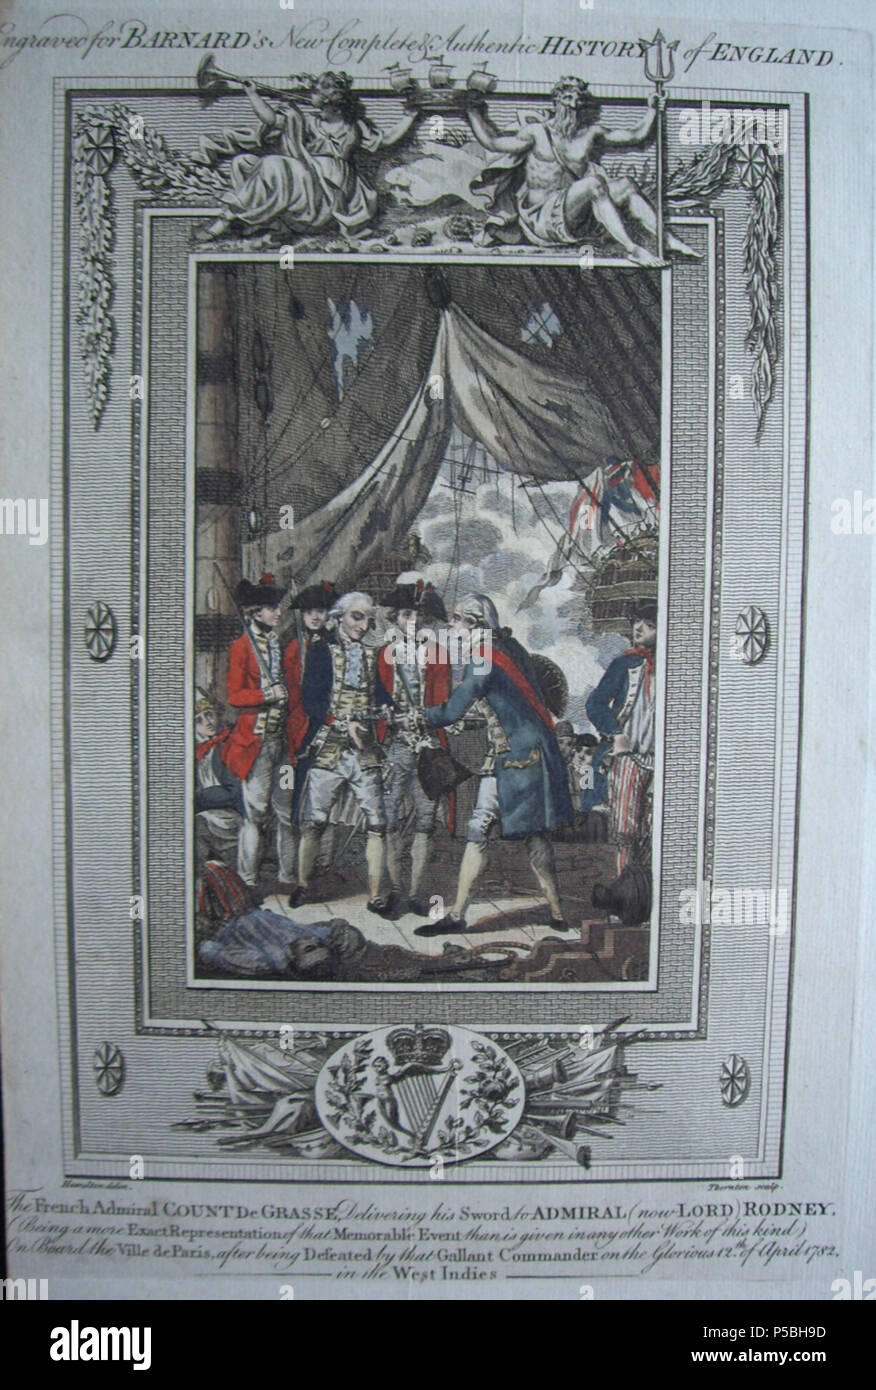 N/A. Inglese: UN 1785 incisione di Rodney accettando la rinuncia di de Grasse. 1785. Sconosciuto 171 Barnard della storia dell'Inghilterra - Rodney accetta la rinuncia di deGrasse Foto Stock